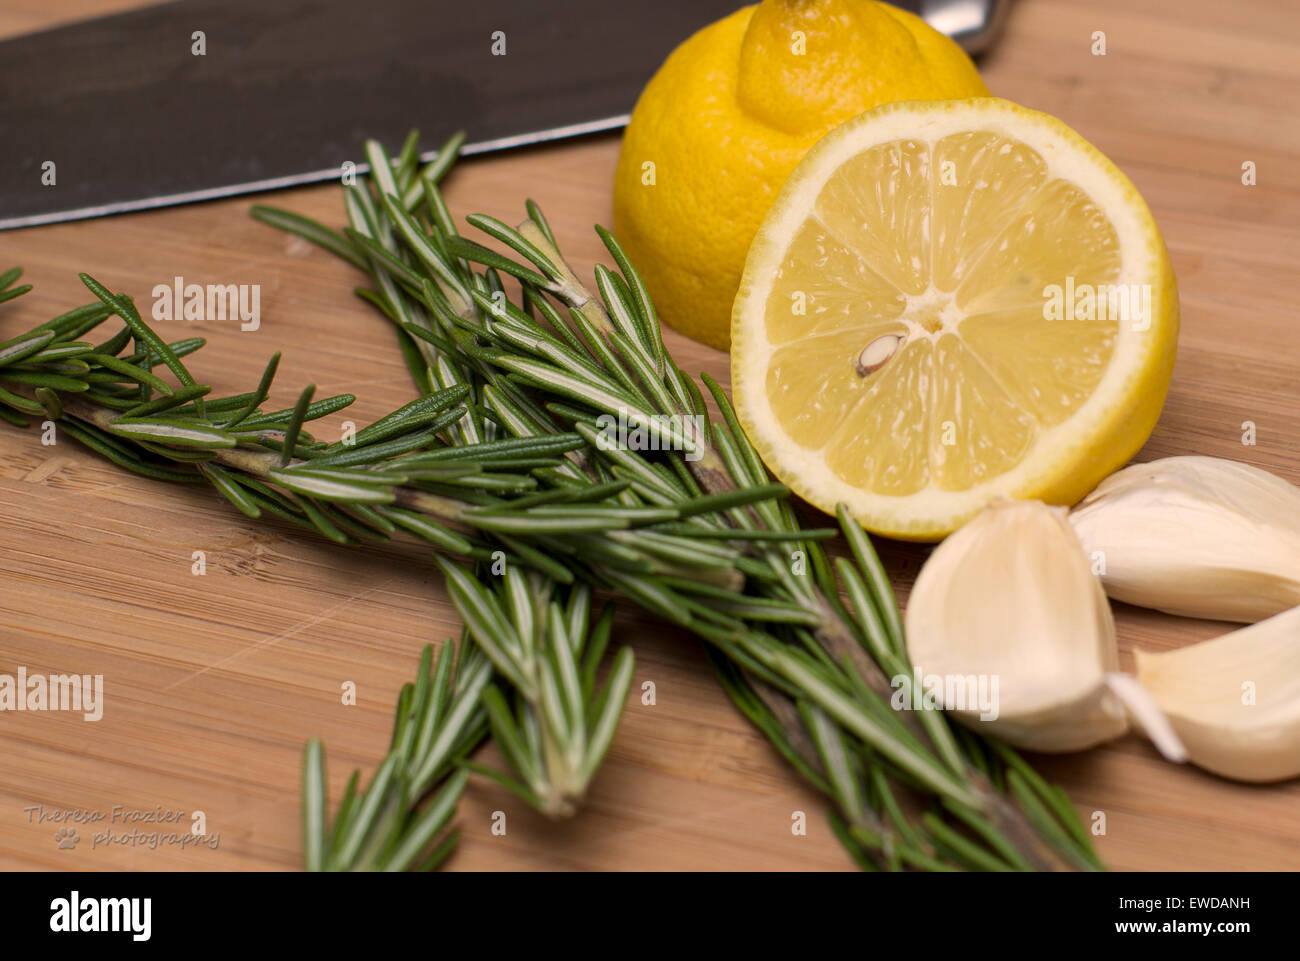 Limone, rosmarino e aglio su un tagliere pronto per la preparazione alimentare Foto Stock